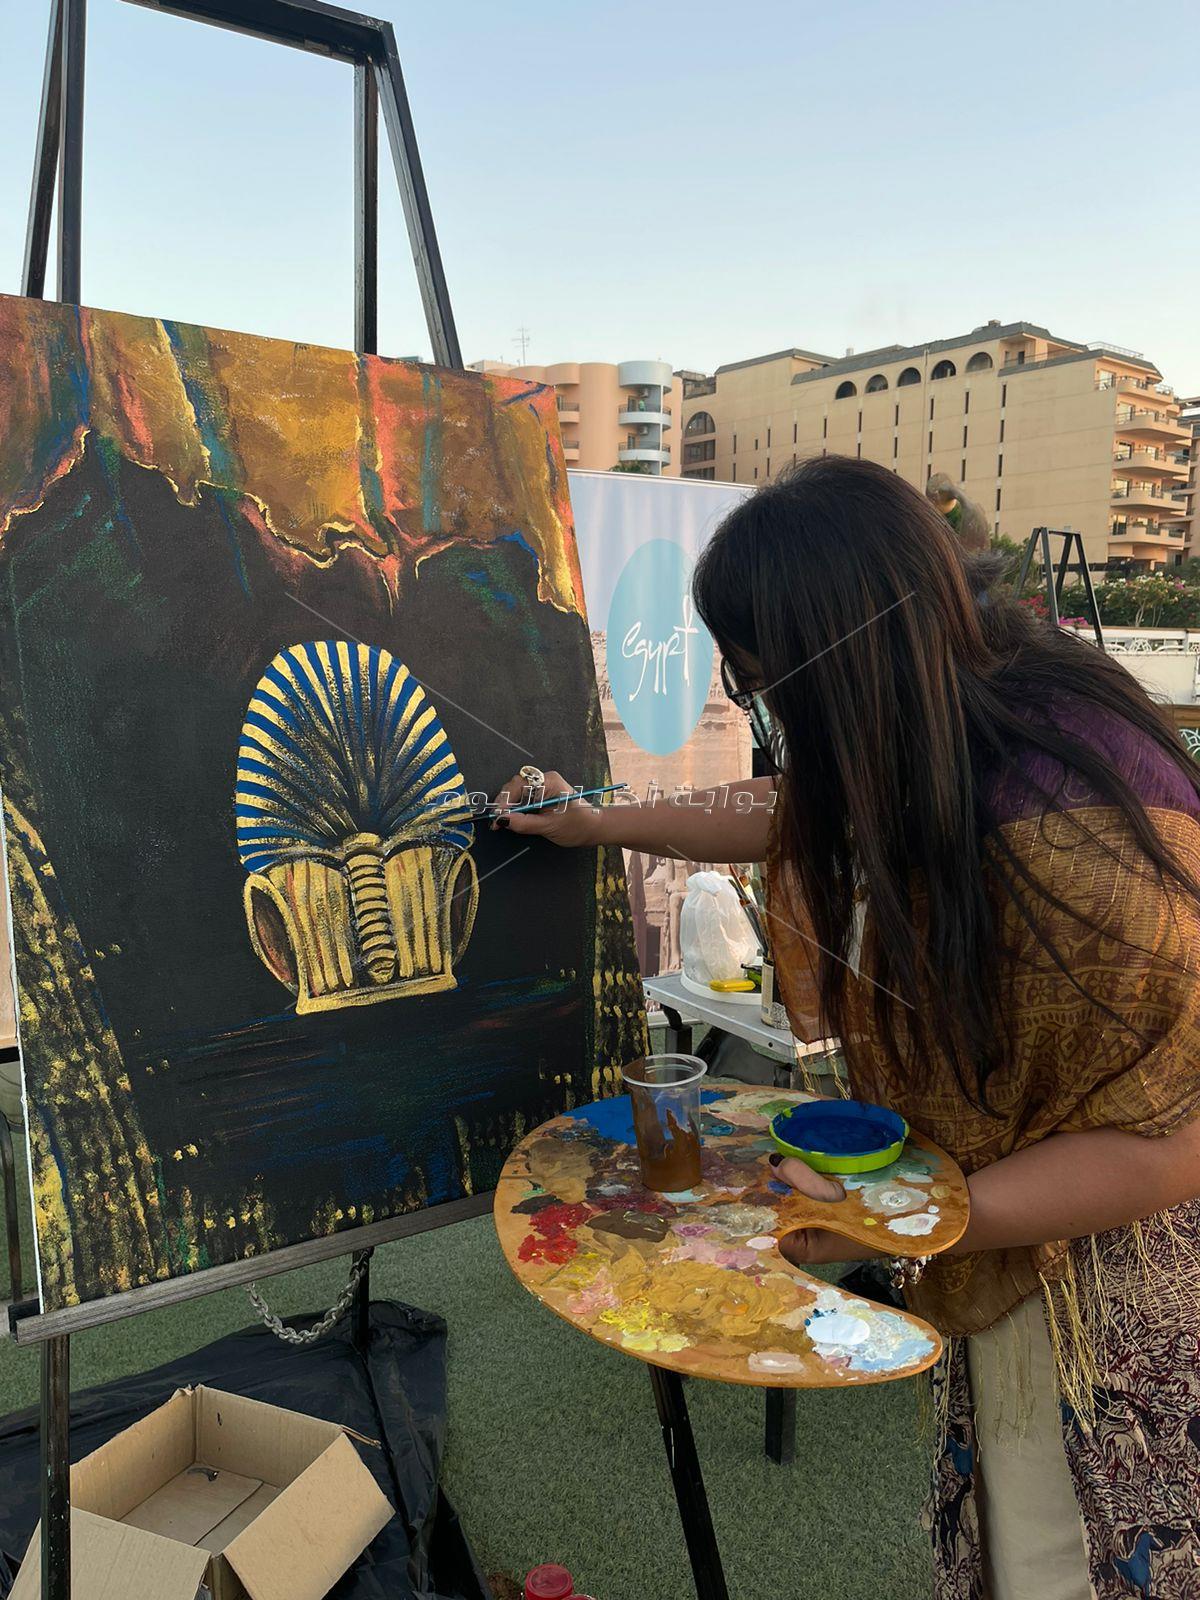 ختام فعاليات ملتقى النيل الدولي للفنون التشكيلية بالأقصر بإقامة معرض "توت عنخ آمون"